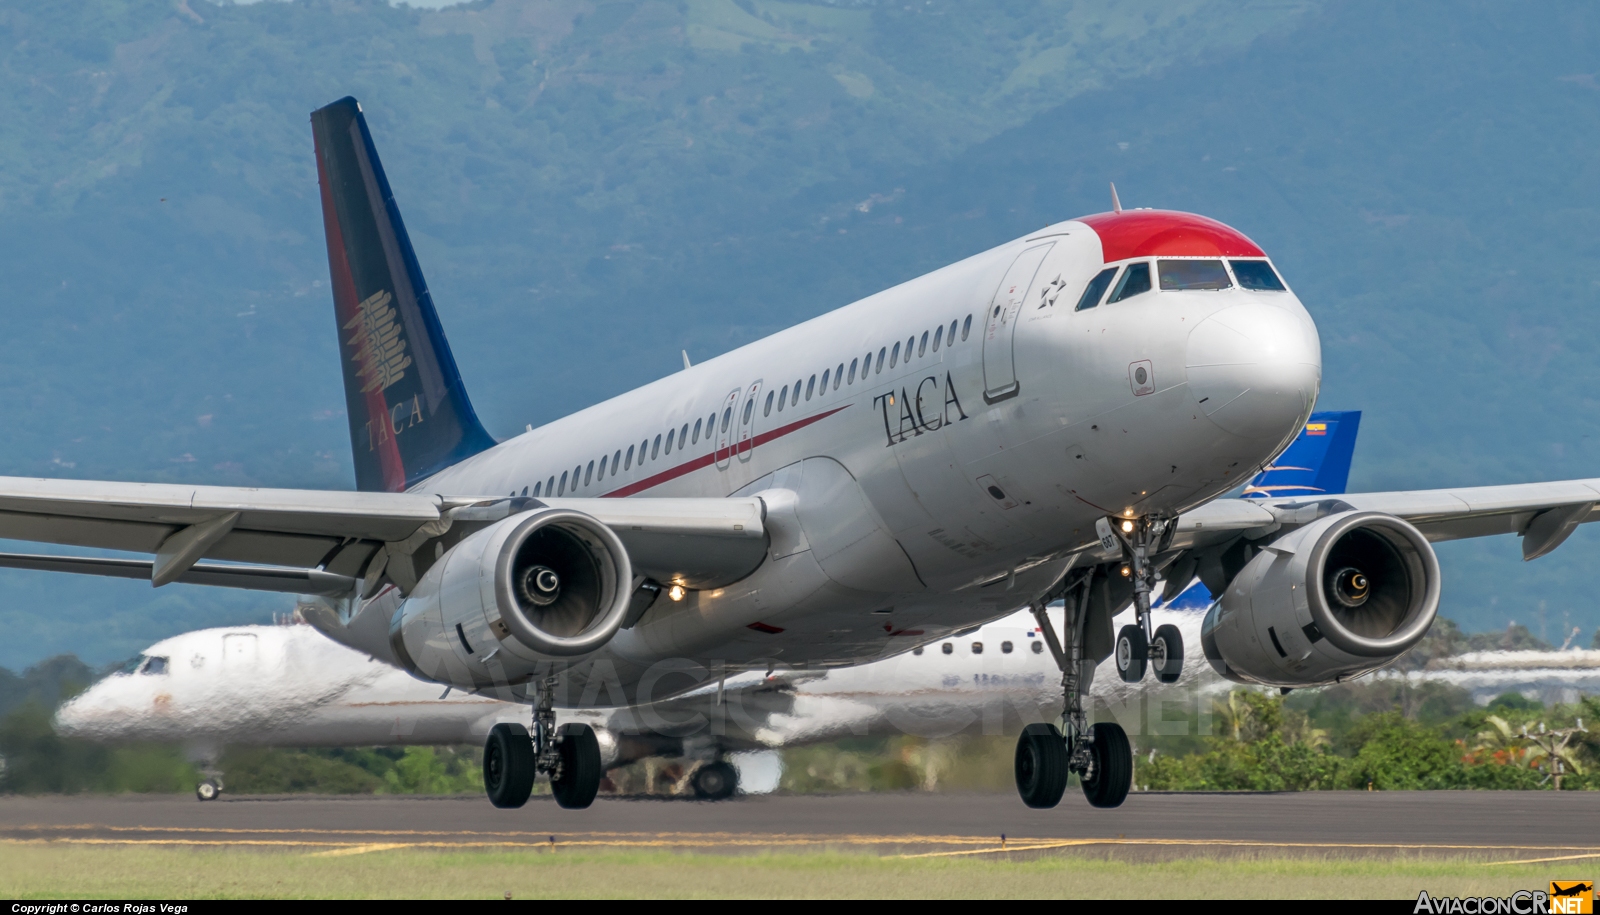 N687TA - Airbus A320-233 - TACA